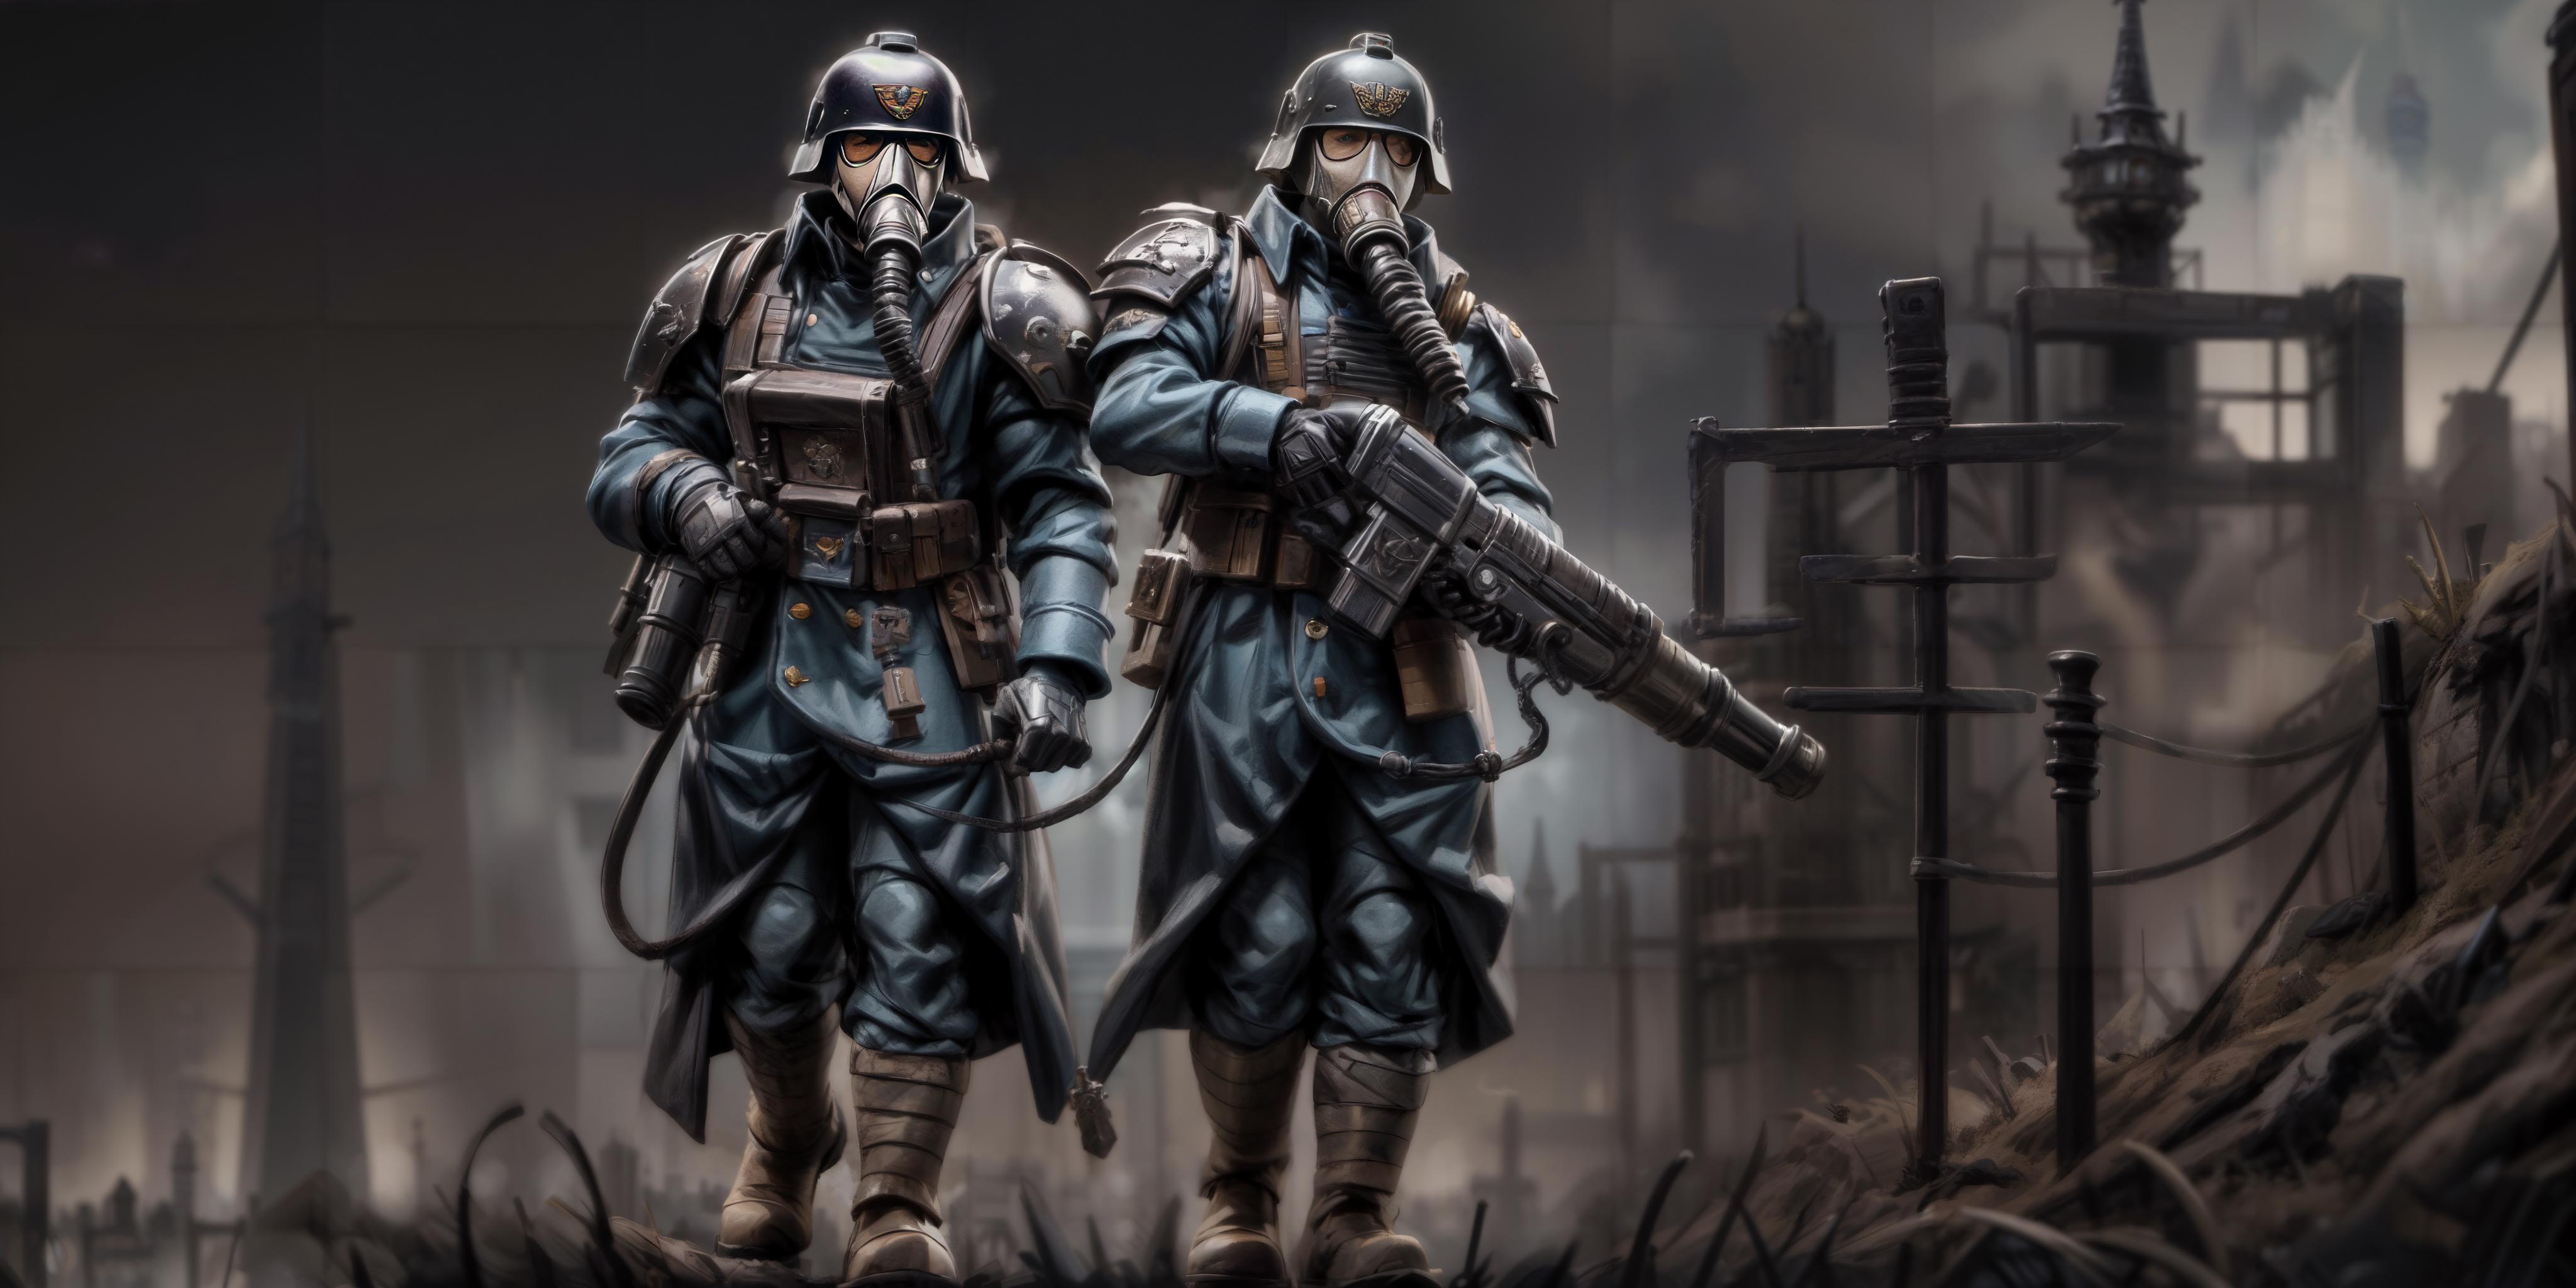 Death Korps of Krieg - Warhammer 40,000 image by Dercius